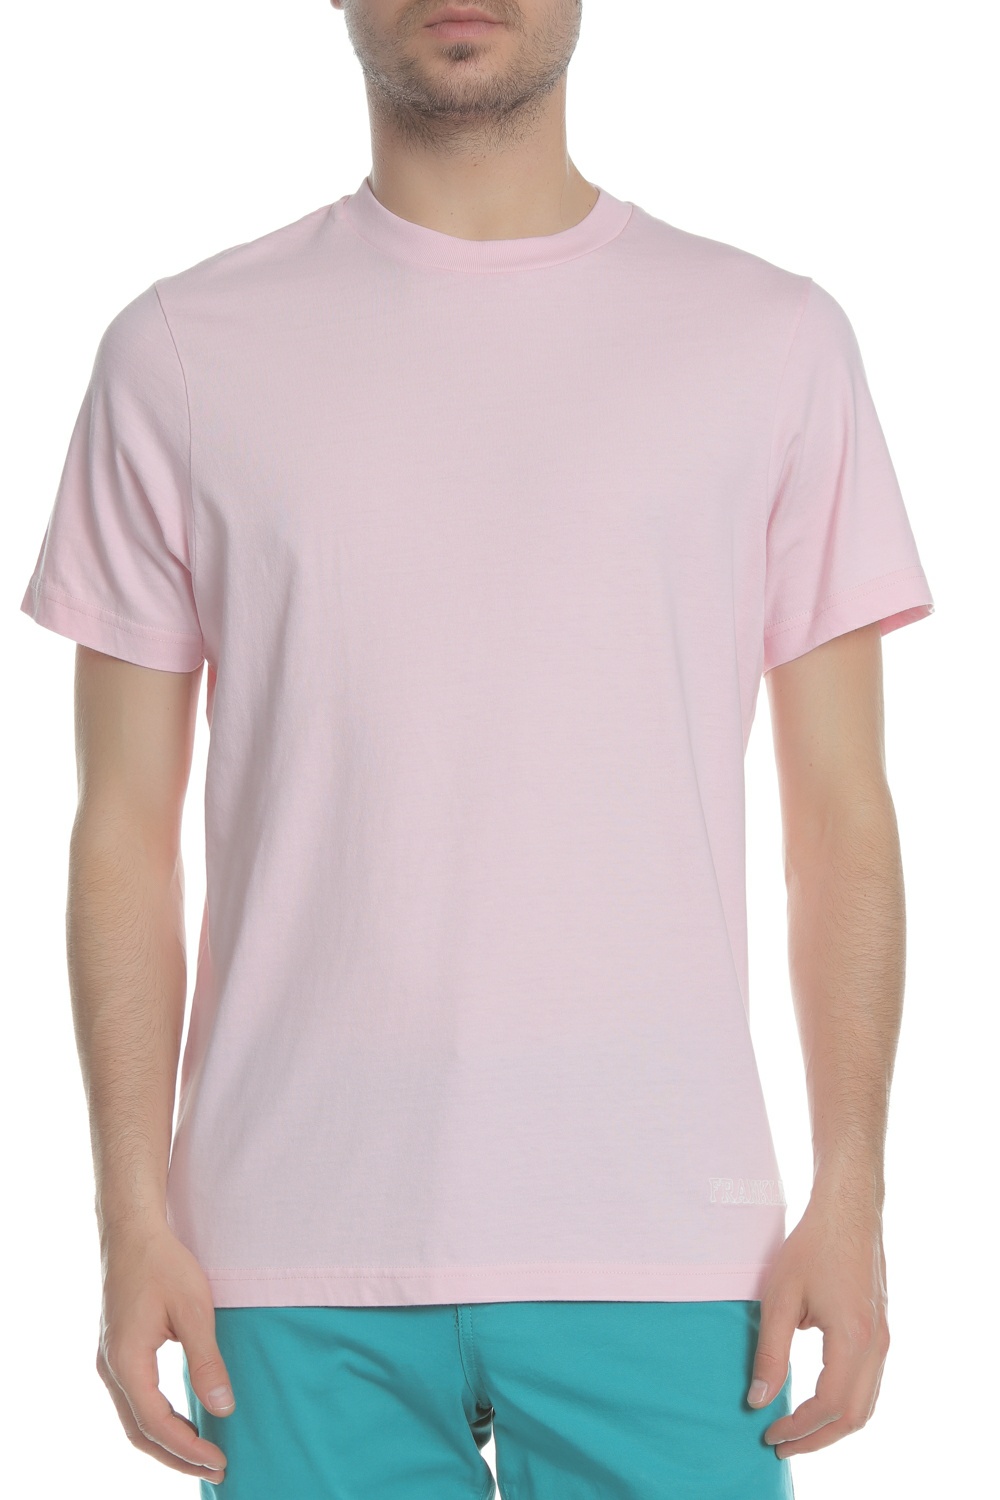 Ανδρικά/Ρούχα/Μπλούζες/Κοντομάνικες FRANKLIN & MARSHALL - Ανδρική κοντομάνικη μπλούζα FRANKLIN & MARSHALL ροζ